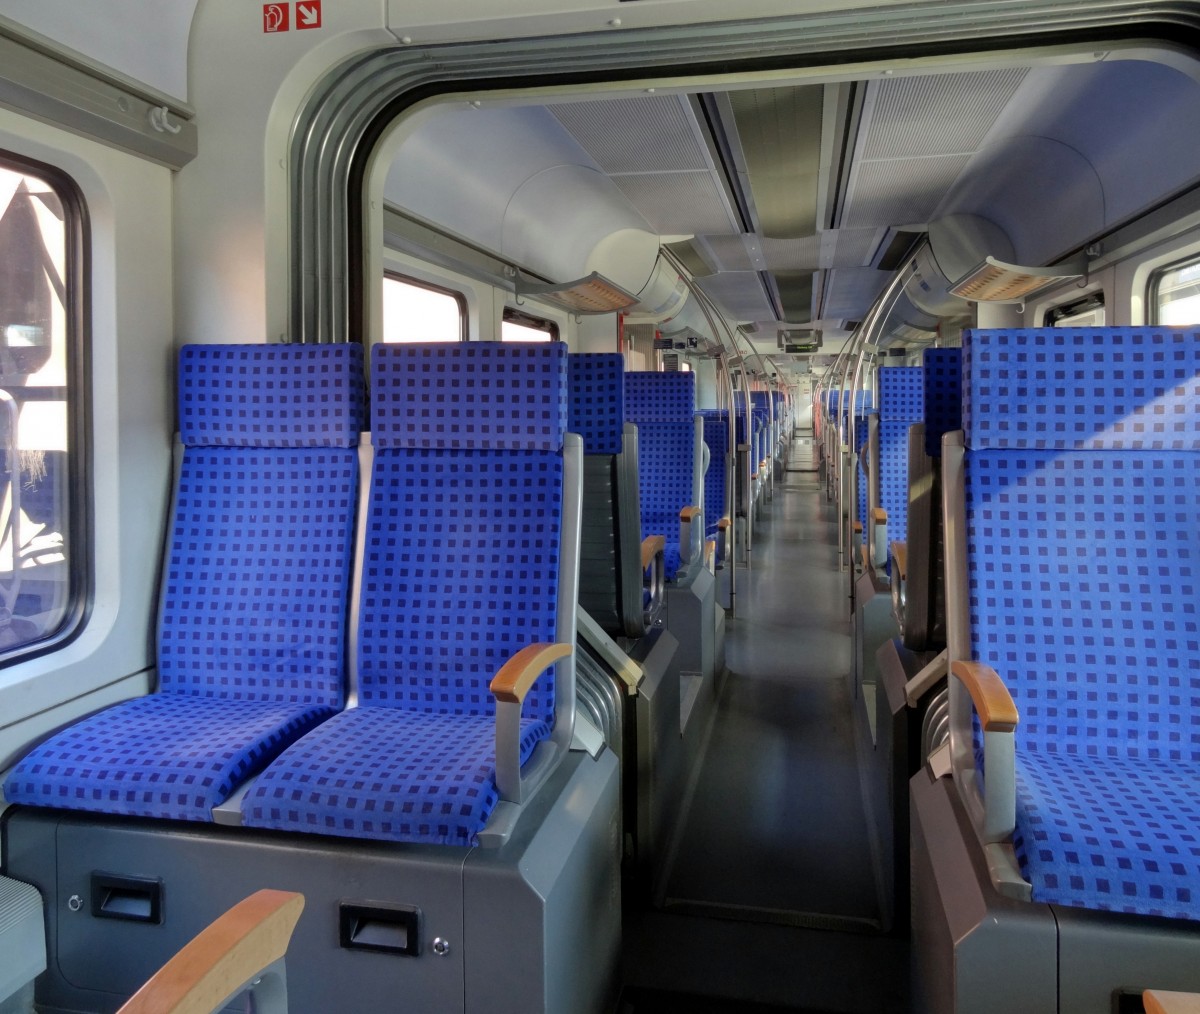 Blick in den Innenraum eines Triebzuges der Baureihe 425.
Aufgenommen im April 2014.